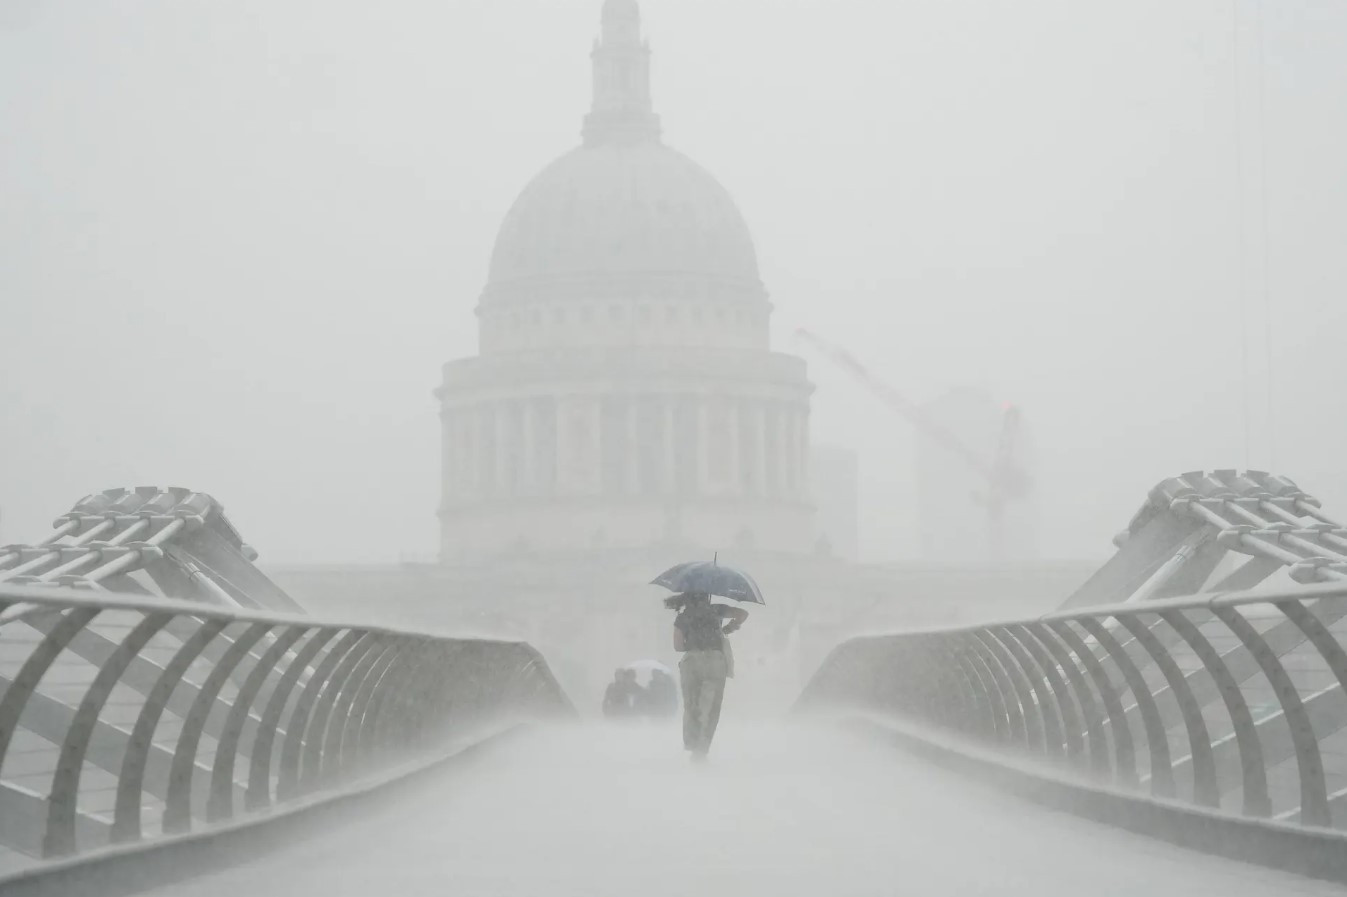 Những người cầm ô đi dưới mưa trên cây cầu Millennium. Sau nhiều tuần thời tiết oi bức, Met Office đã đưa ra cảnh báo giông bão khi mưa xối xả đổ bộ vào các vùng của Anh và xứ Wales. Ảnh: Victoria Jones / PA.